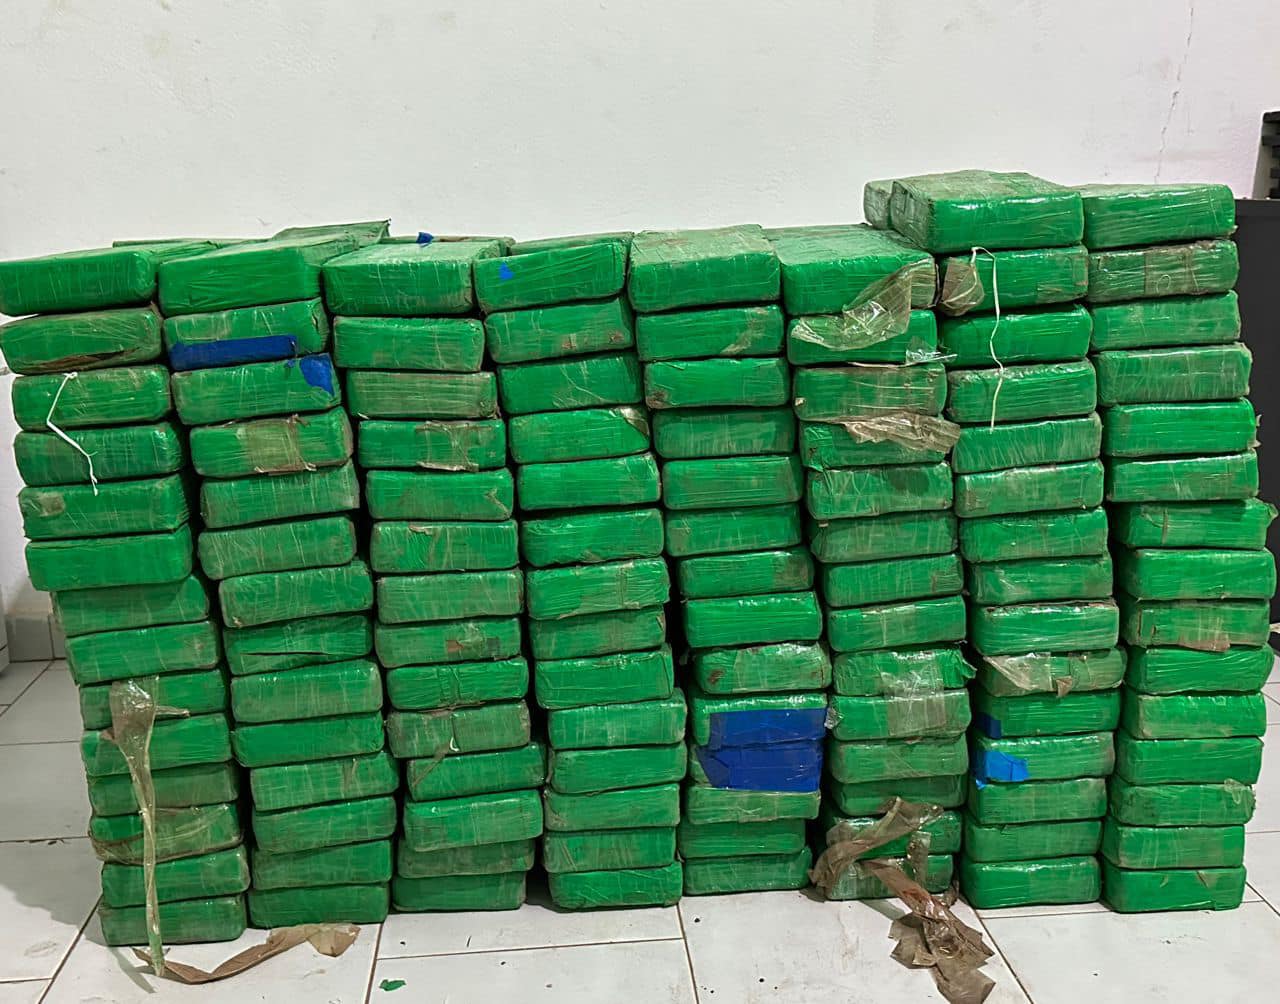 Trafic de drogue : 264 kilogrammes de cocaïne saisis par les Douanes à Koumpentoum